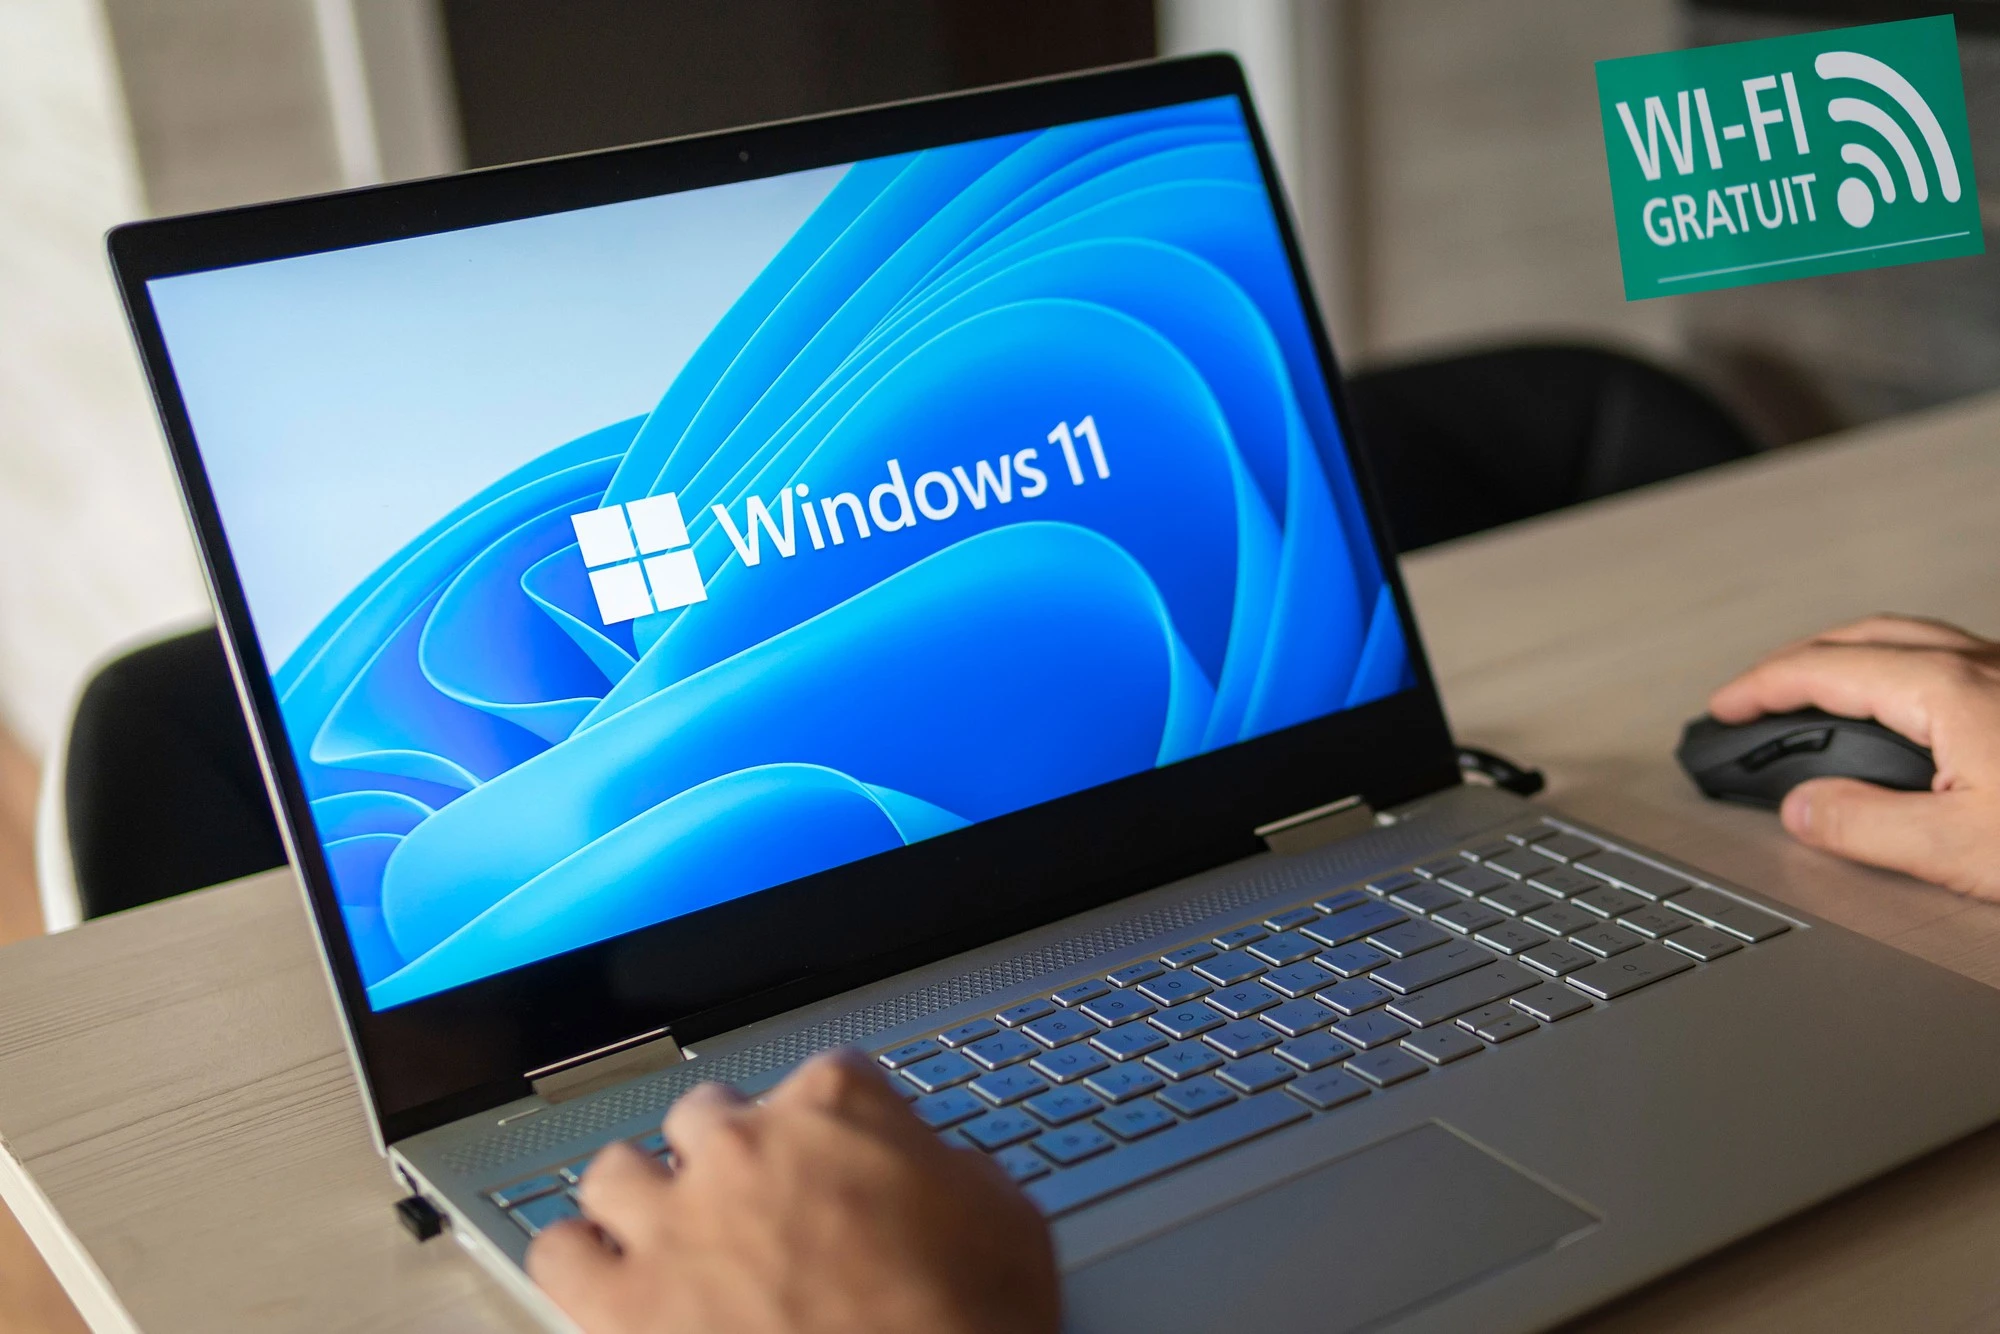 Microsoft xác nhận bị lỗi Wi-Fi trong bản cập nhật Windows 11 - Ảnh 1.